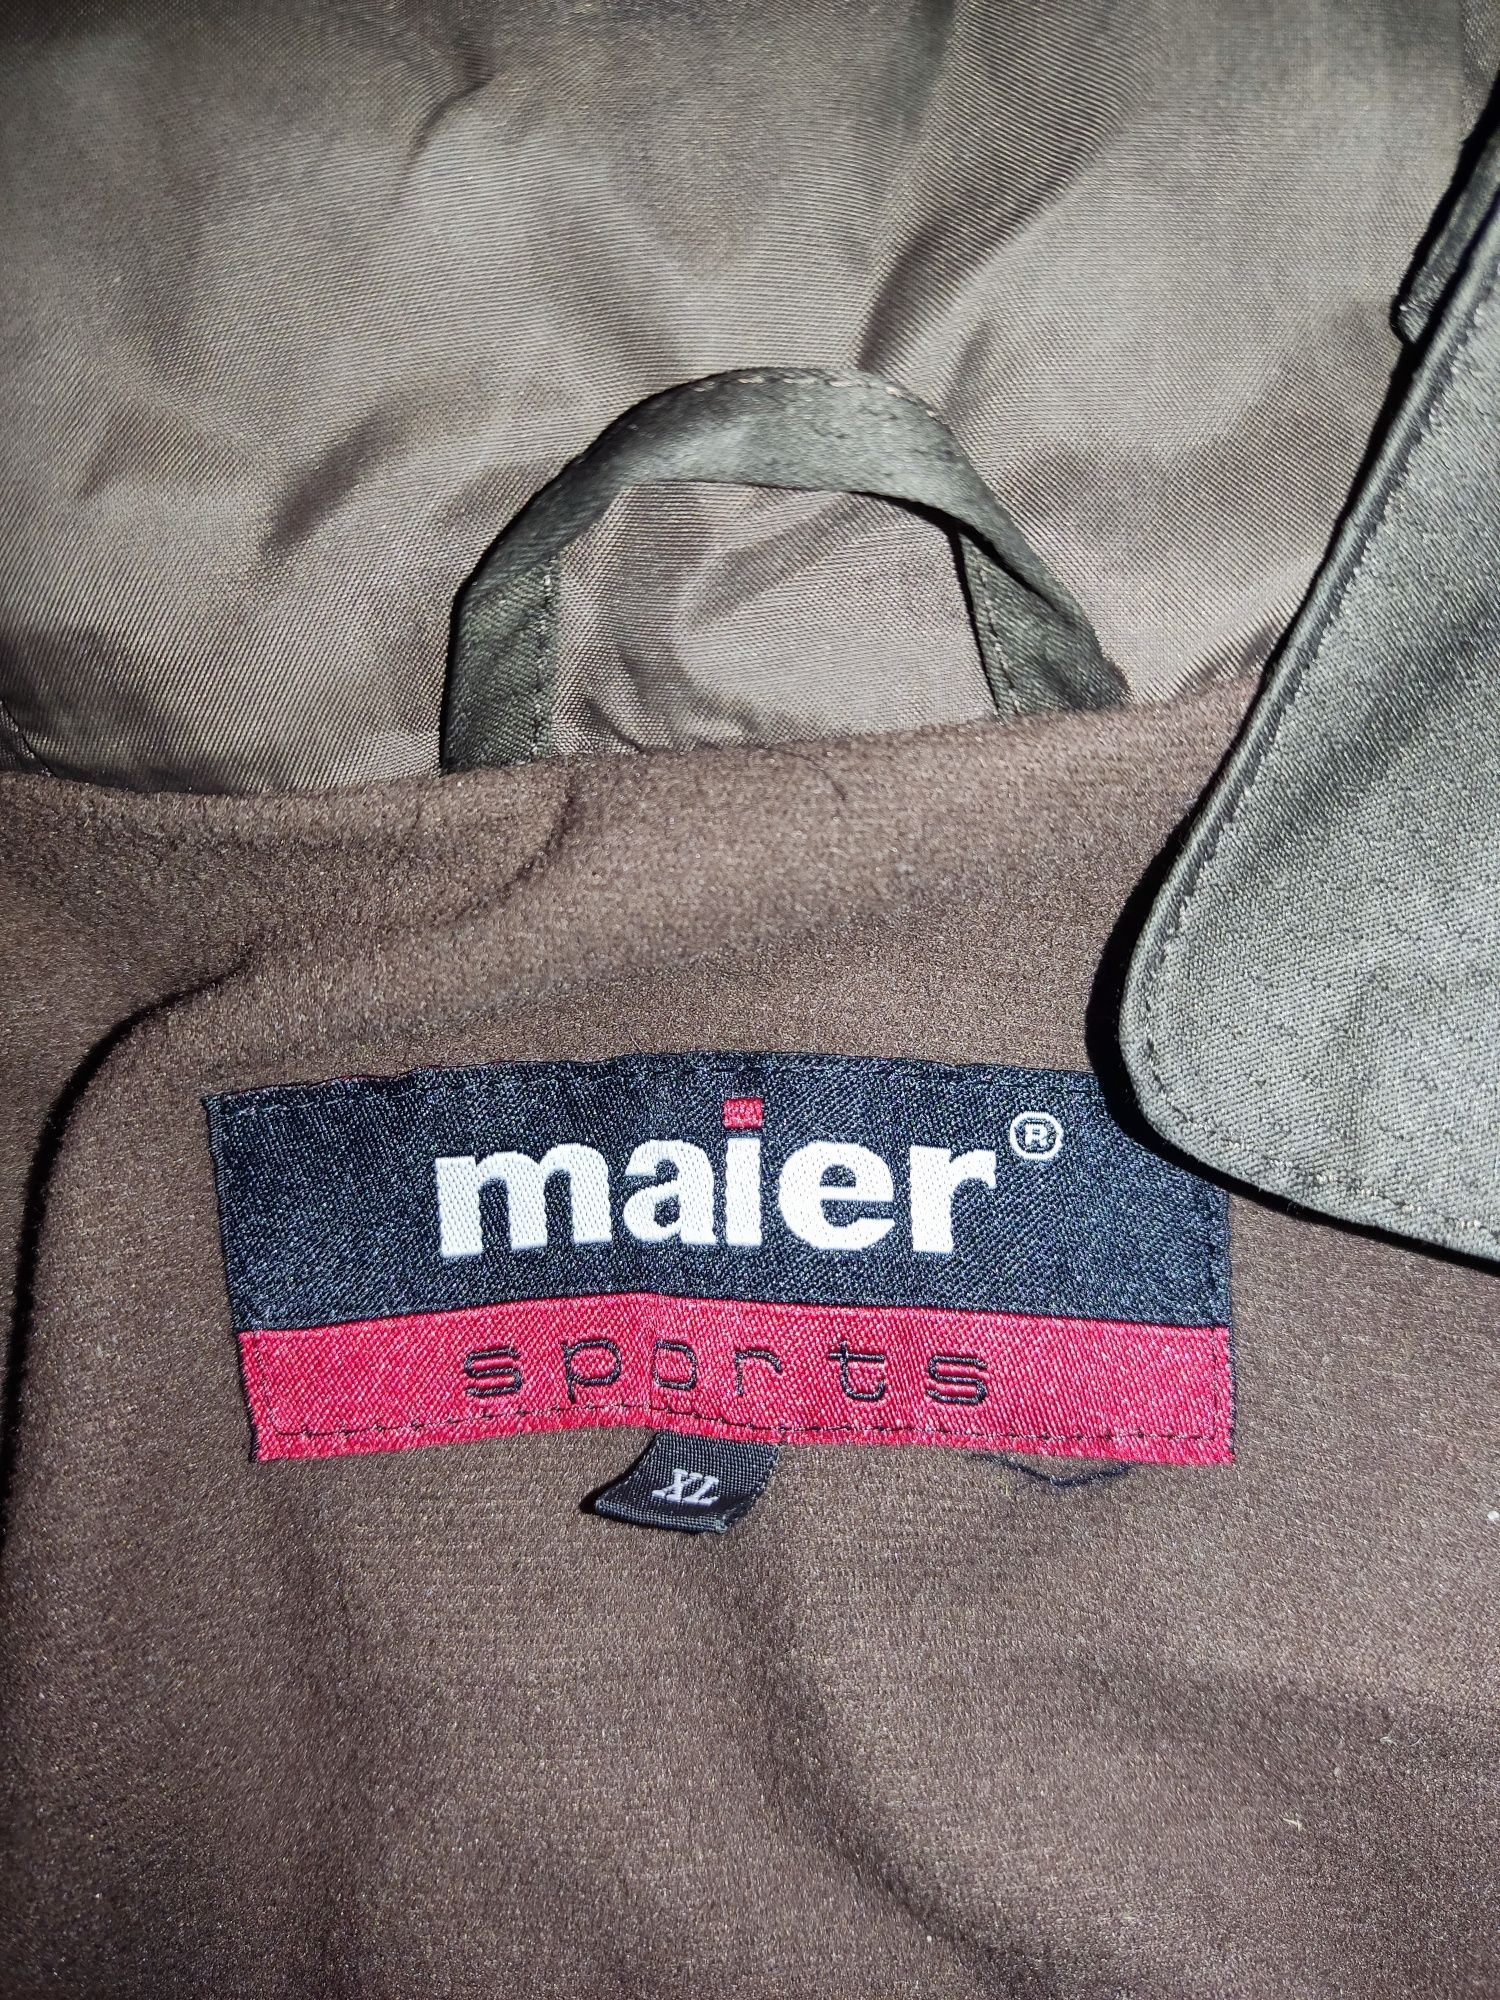 Продается демисезонная спортивная куртка Maier sports 54р.